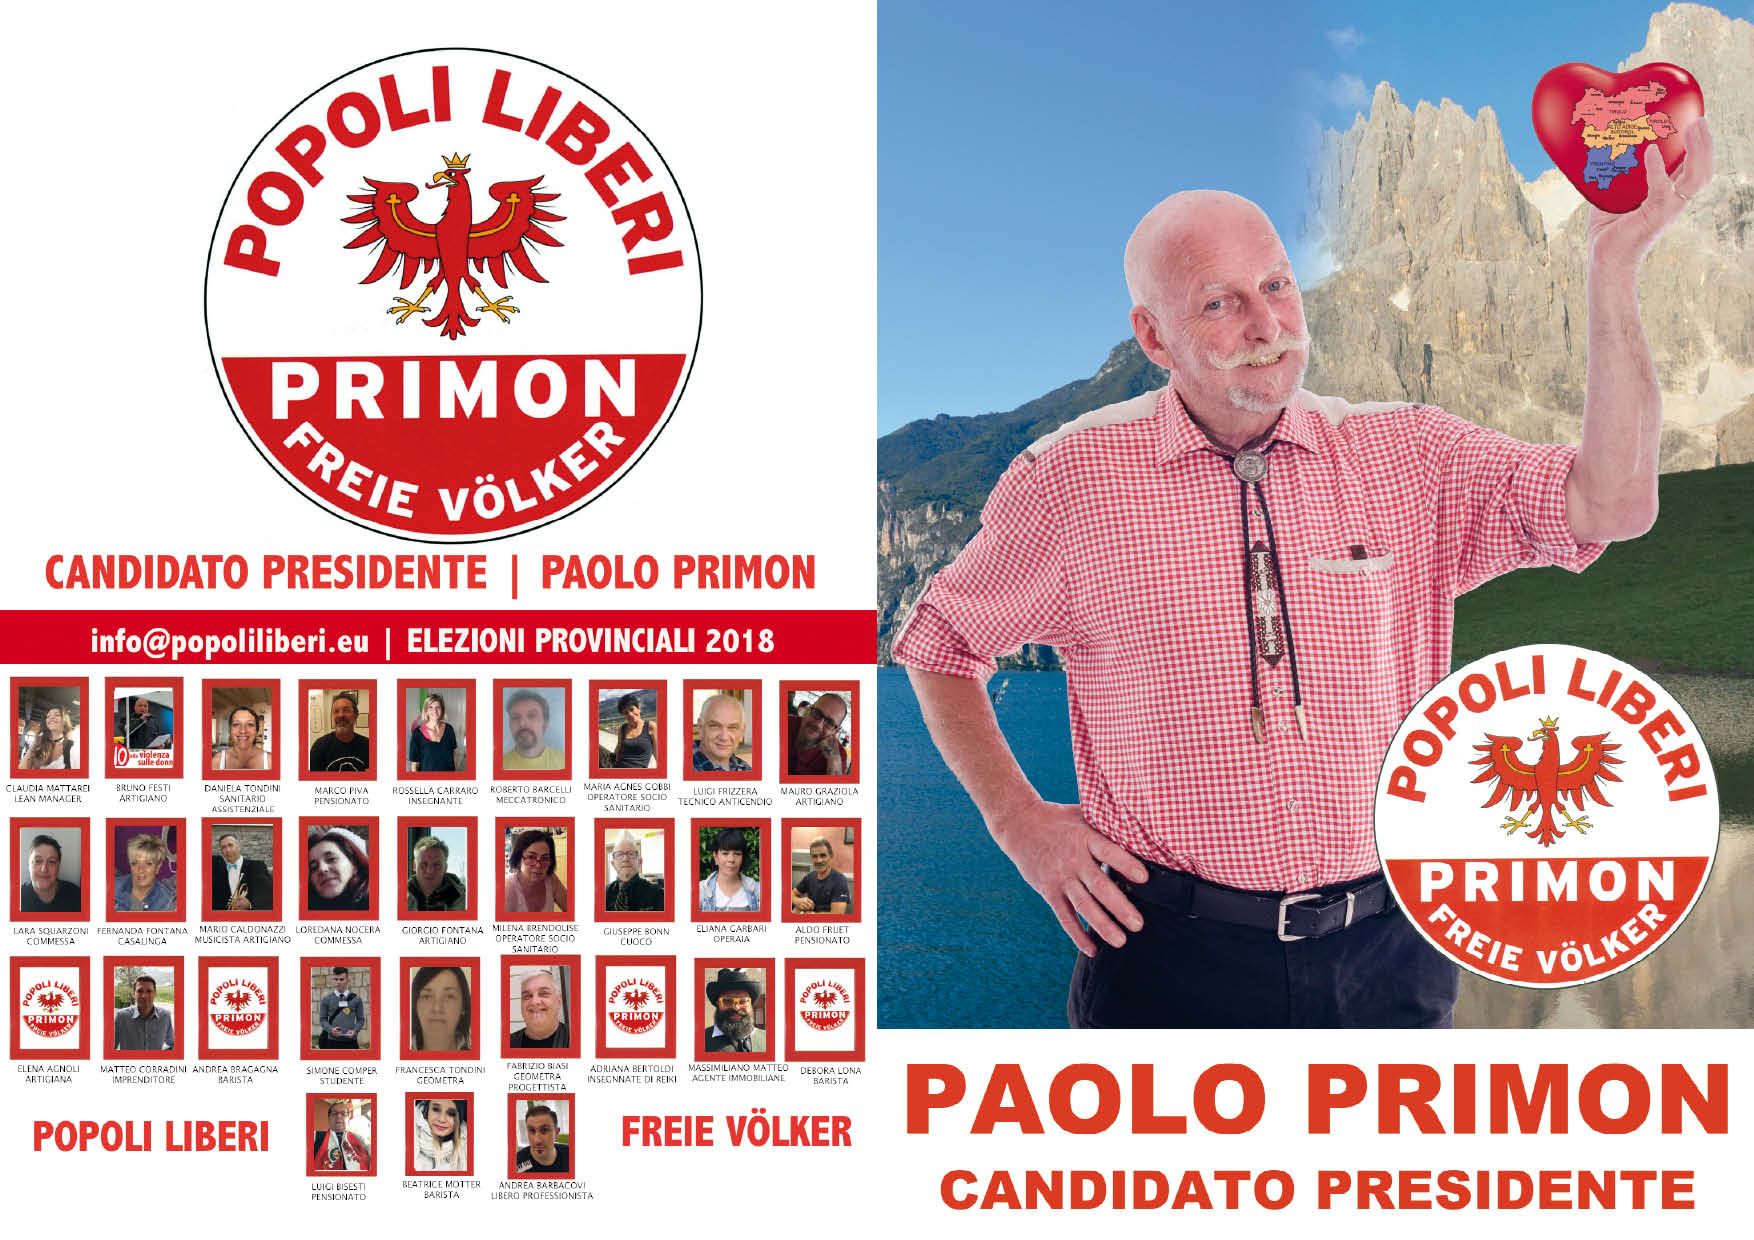 I manifesti elettorali di Popoli Liberi per le elezioni provinciali 2018 in Trentino